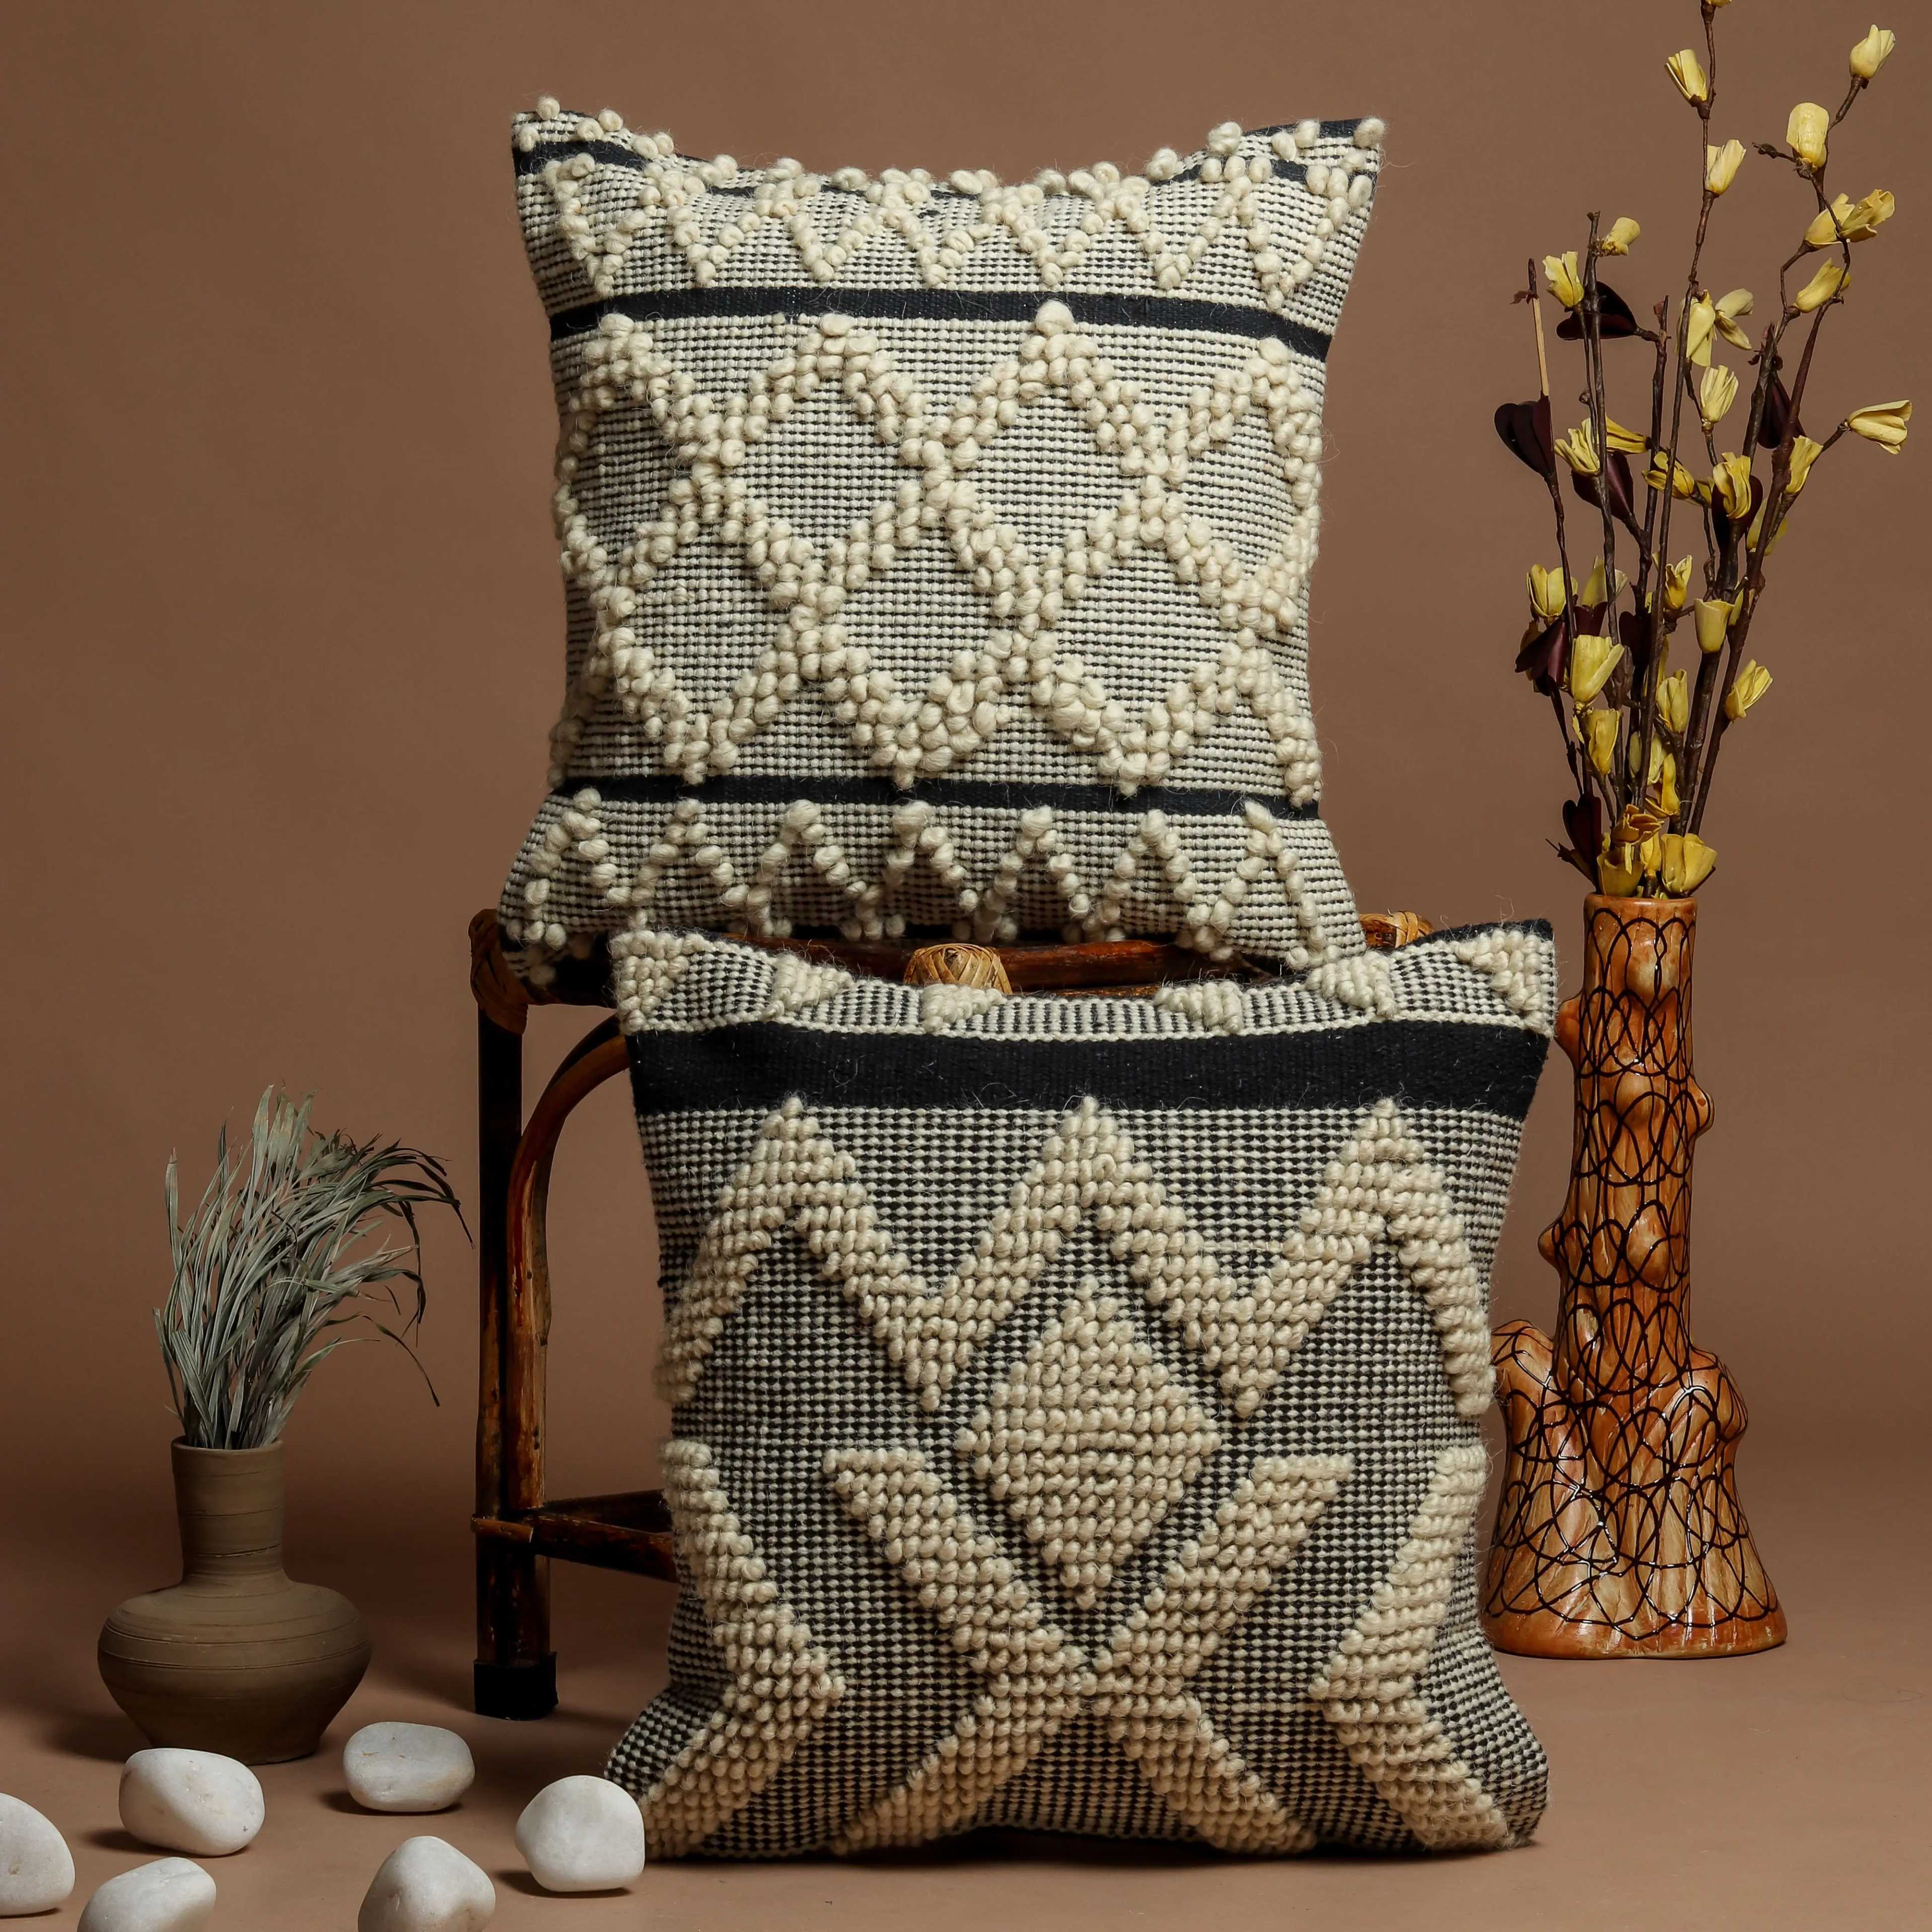 Handmade Wool Shag Pillow, 18x18